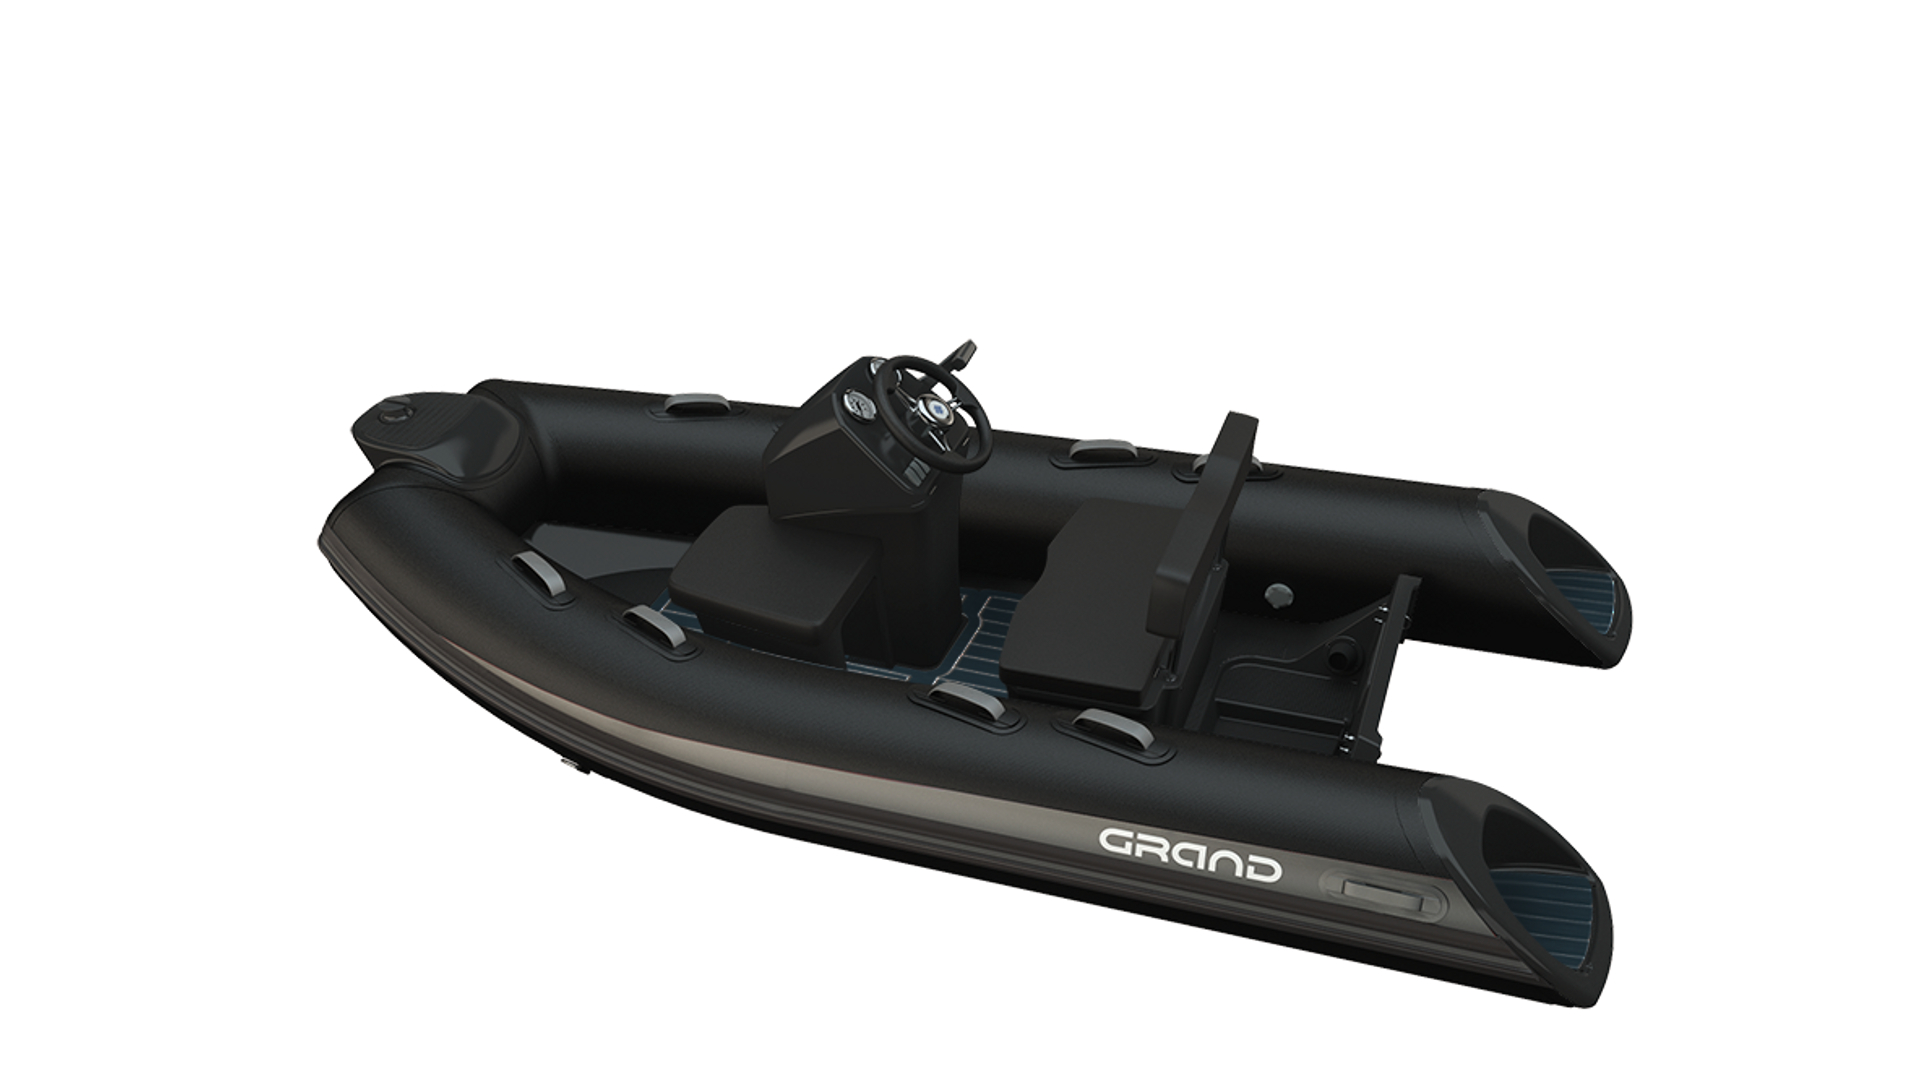 Надувная лодка с жестким дном GRAND Silver Line S300L, Надувная лодка GRAND Silver Line S300L, GRAND Silver Line S300L, GRAND Silver Line S300LF, GRAND S300L, GRAND S300LF, GRAND S300, Rigid Inflatable Boats GRAND, RIB GRAND